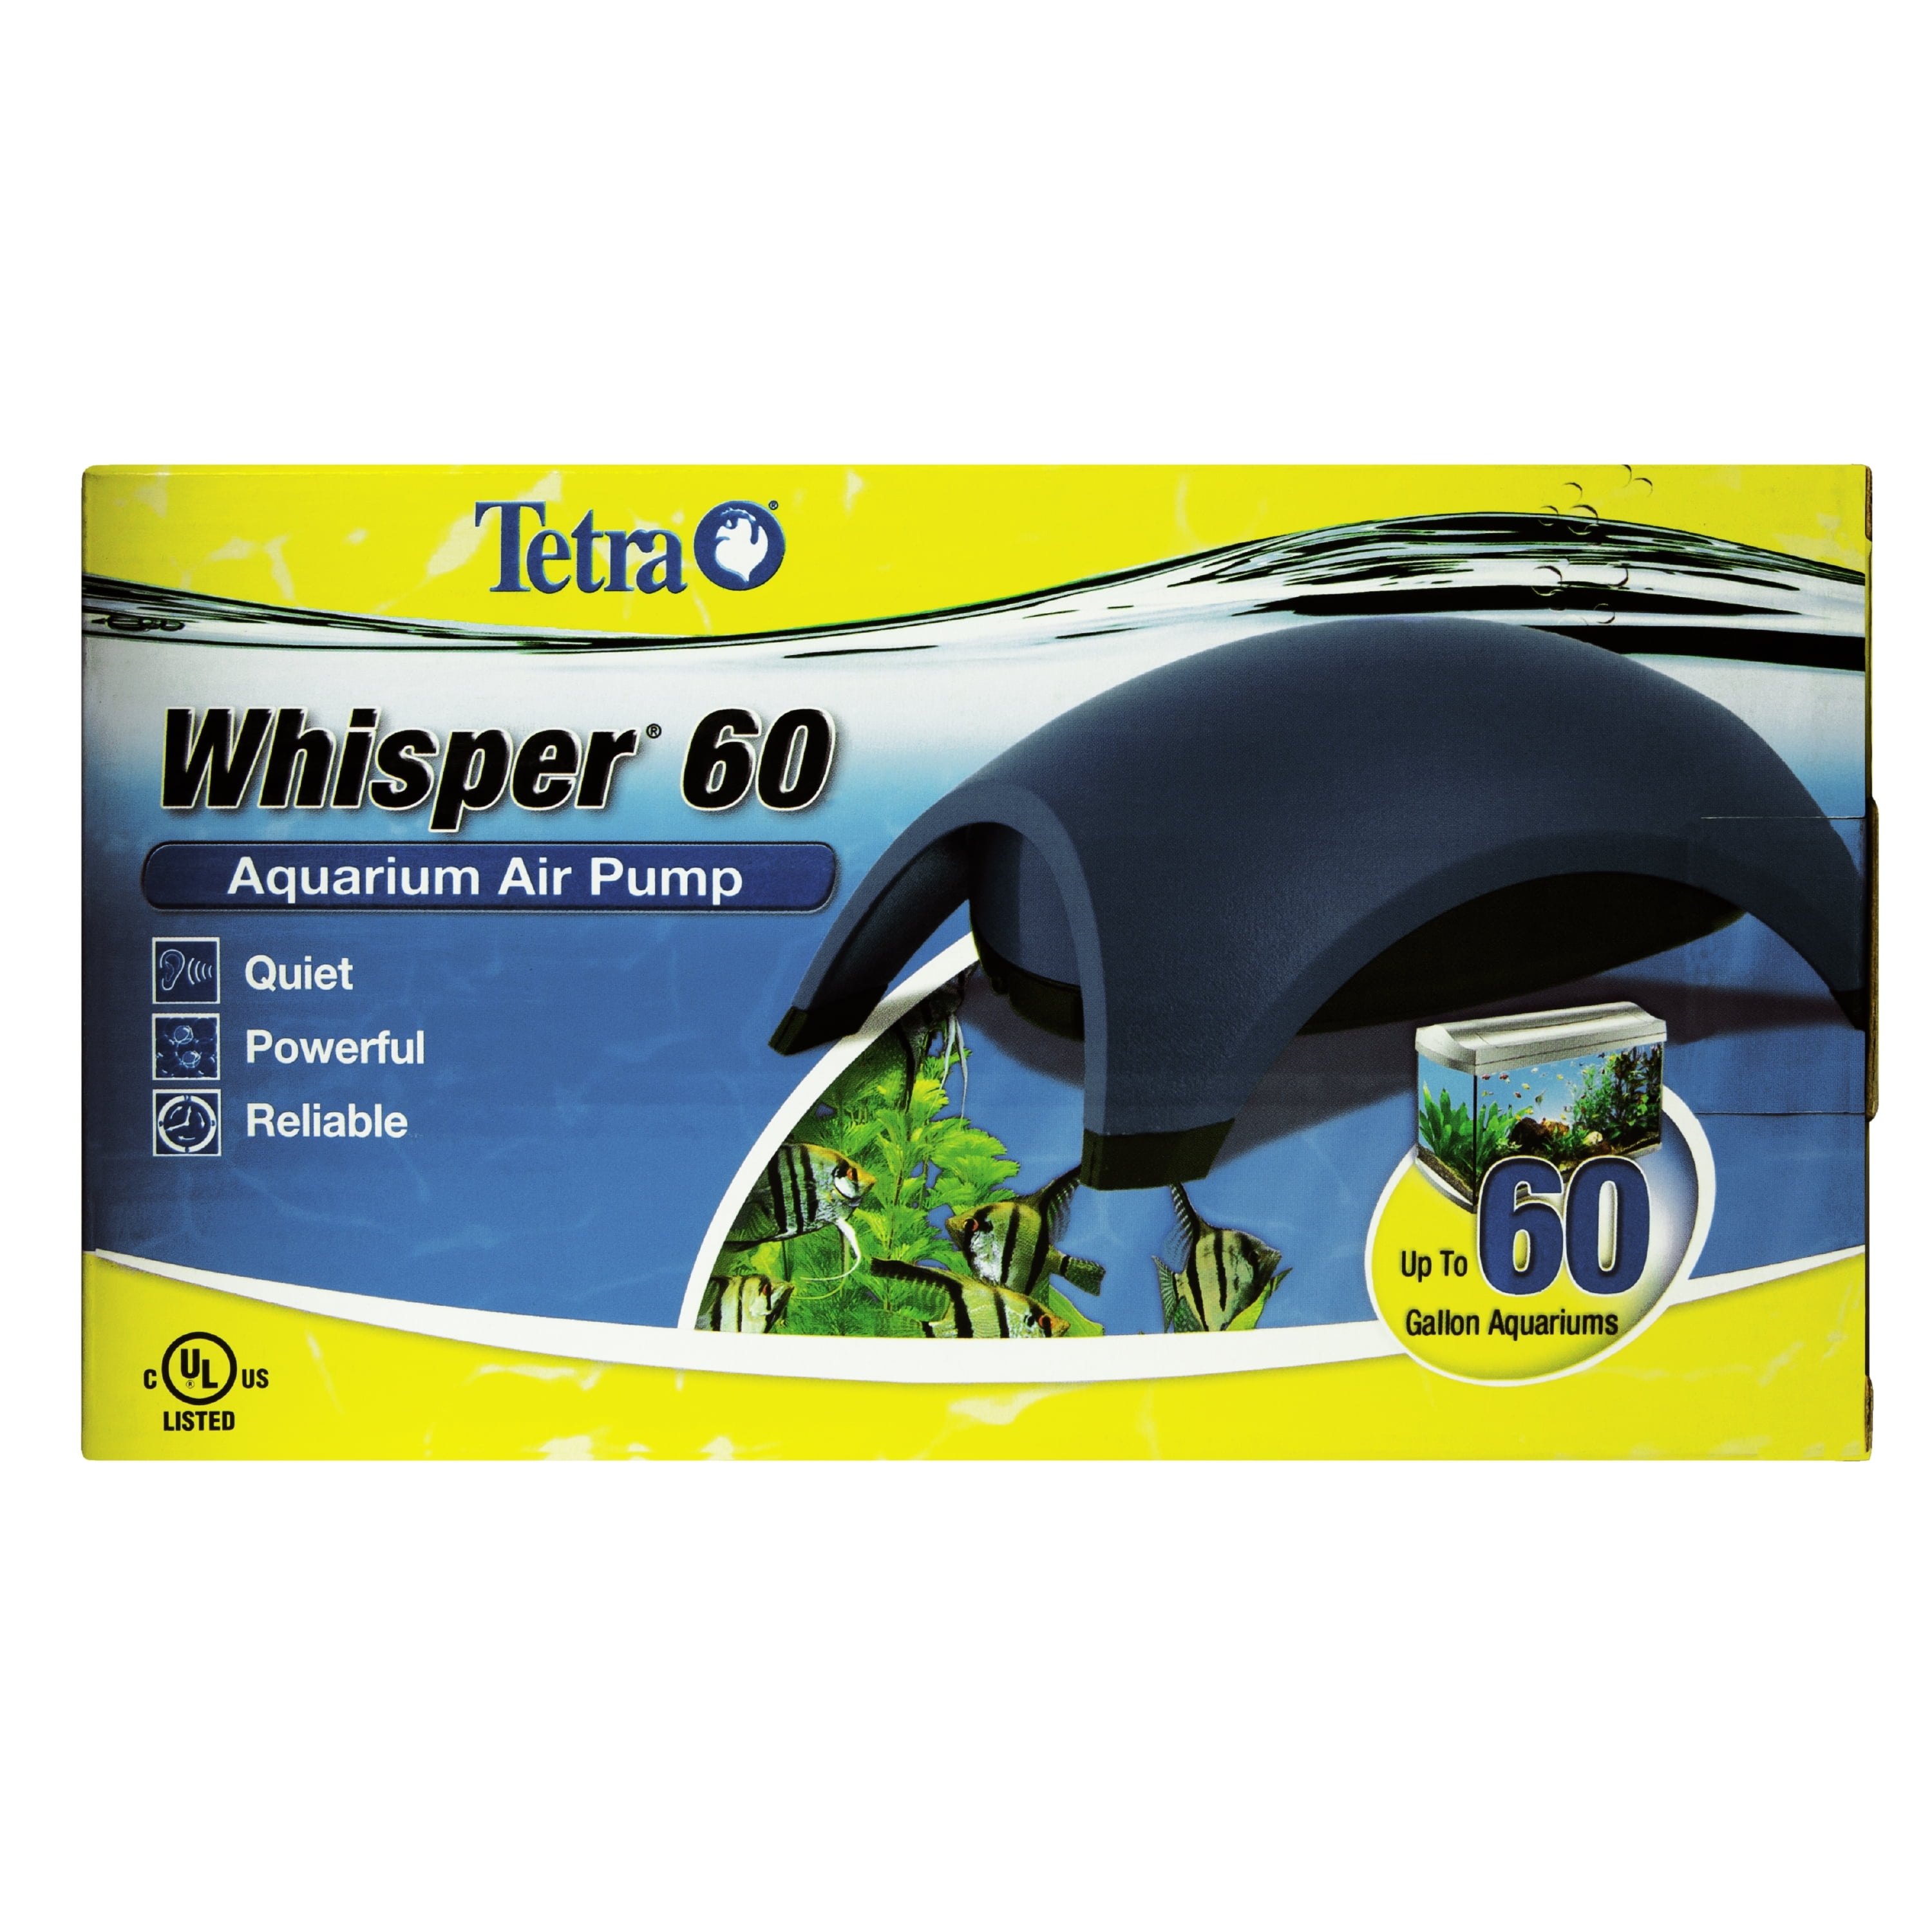 Benodigdheden kwaadheid de vrije loop geven voorjaar Tetra Whisper Air Pump 30 to 60 Gallons, For Aquariums, Quiet, Powerful  Airflow - Walmart.com